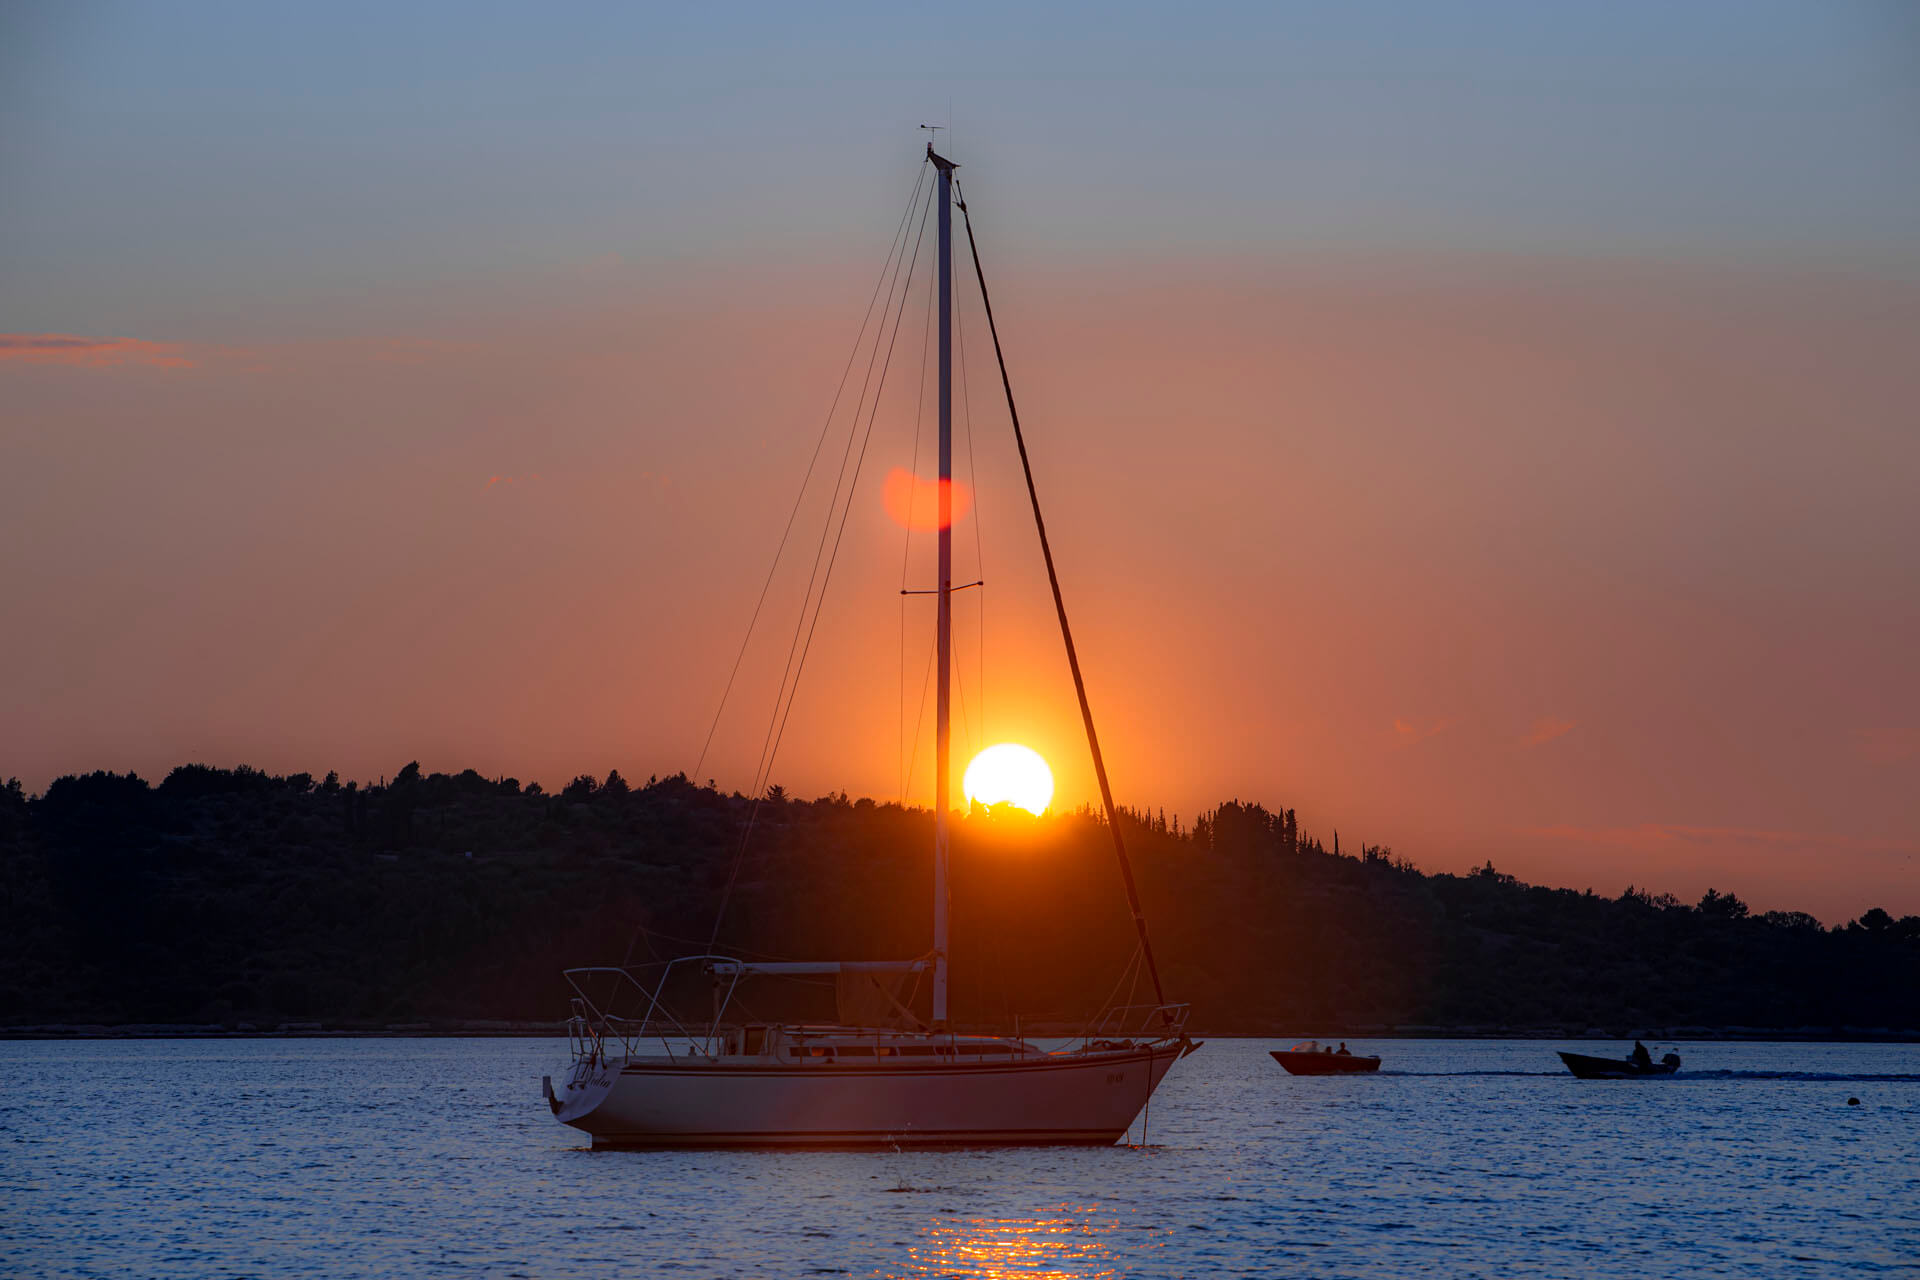 2019/09/24 - Sailing boat at sunset 4